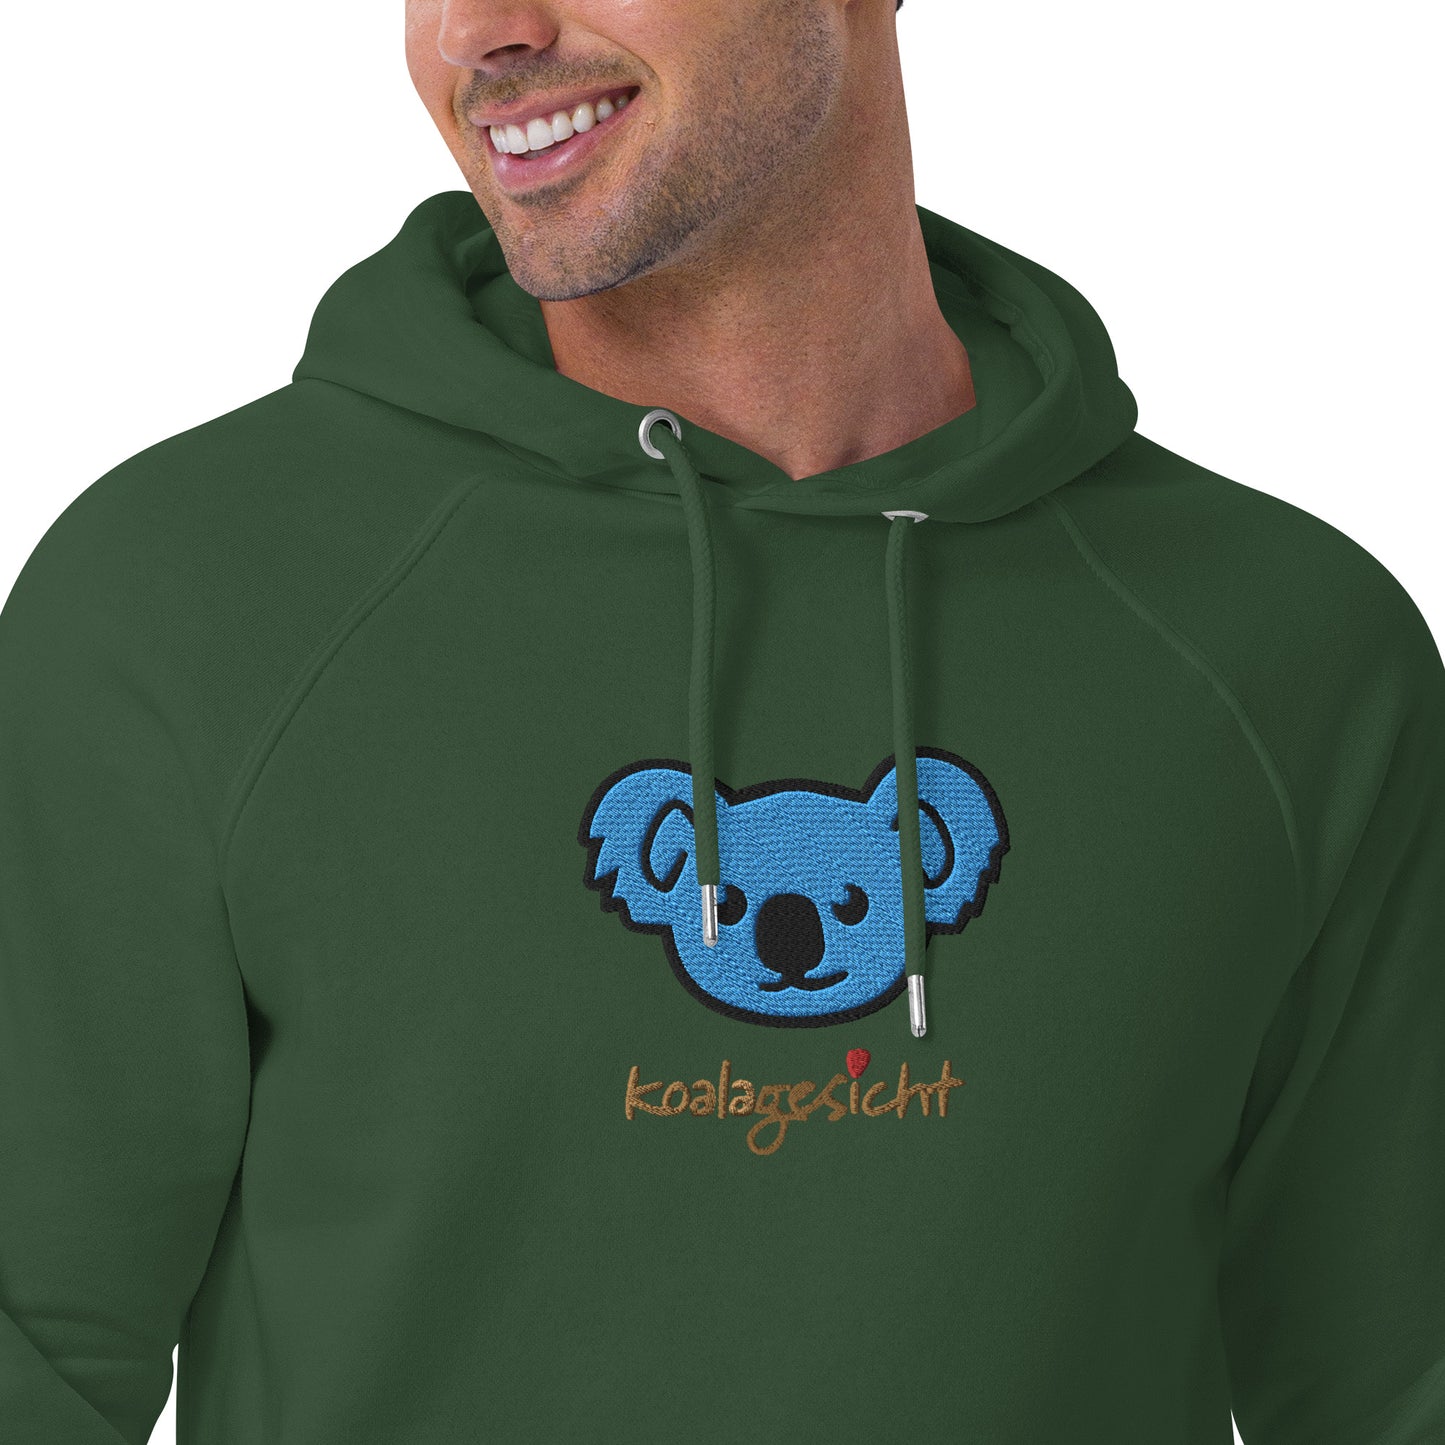 Koalagesicht - Bio Hoodie Koalabär Stickerei blau